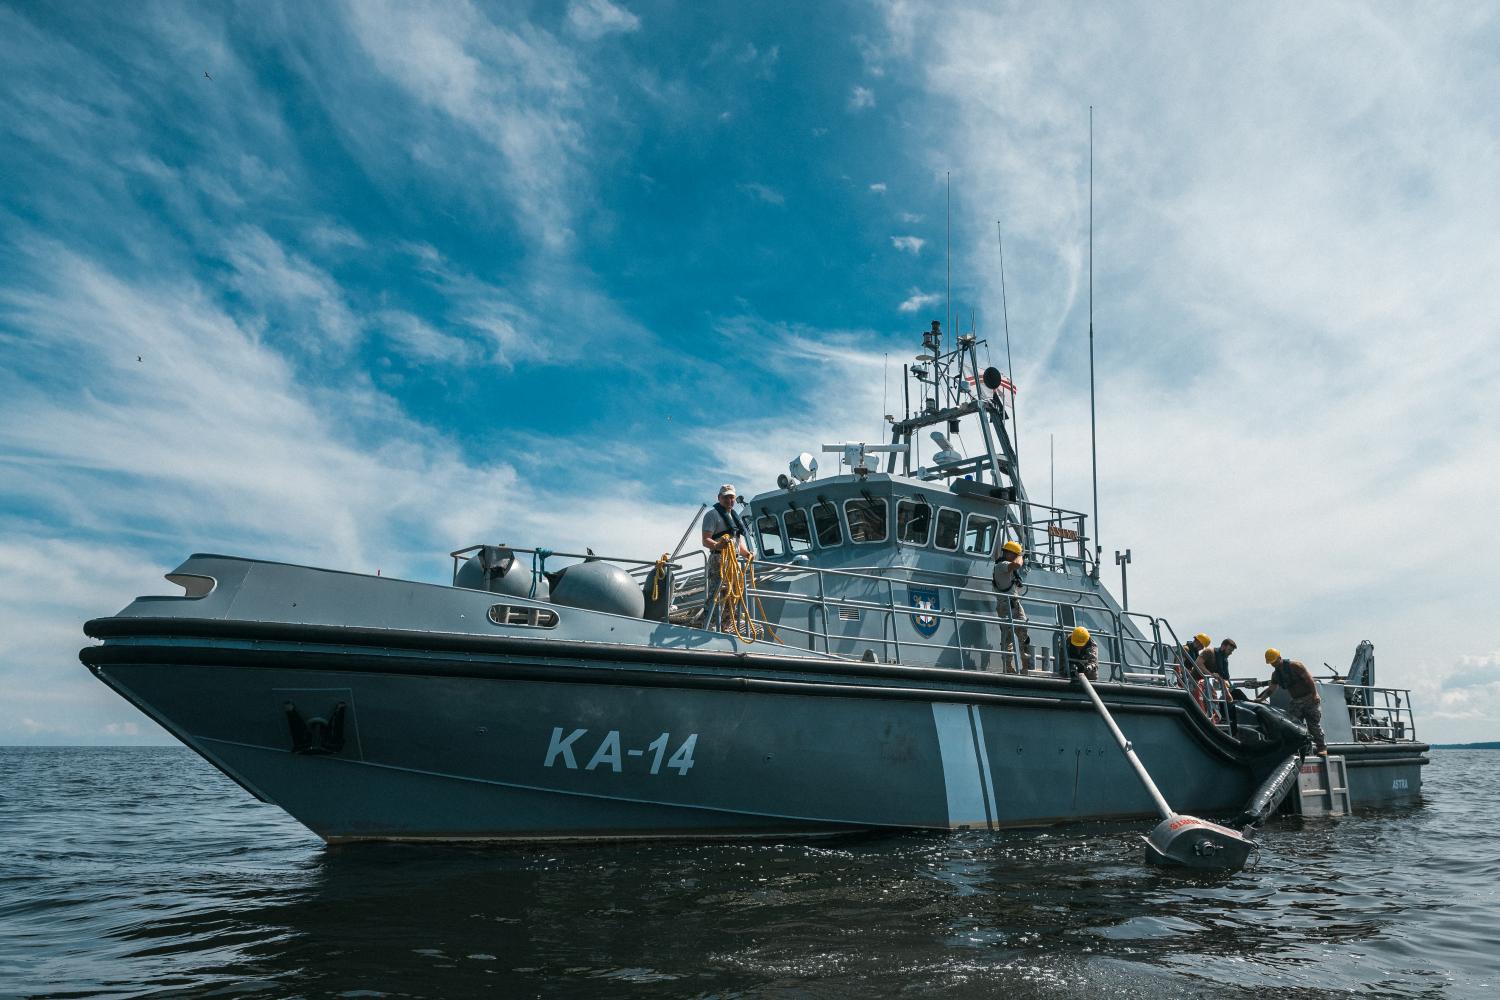 Ņaftas savākšanas tehnikas izmēģinājums jūrā uz krasta apsardzes kuģa KA - 14 "Astra"